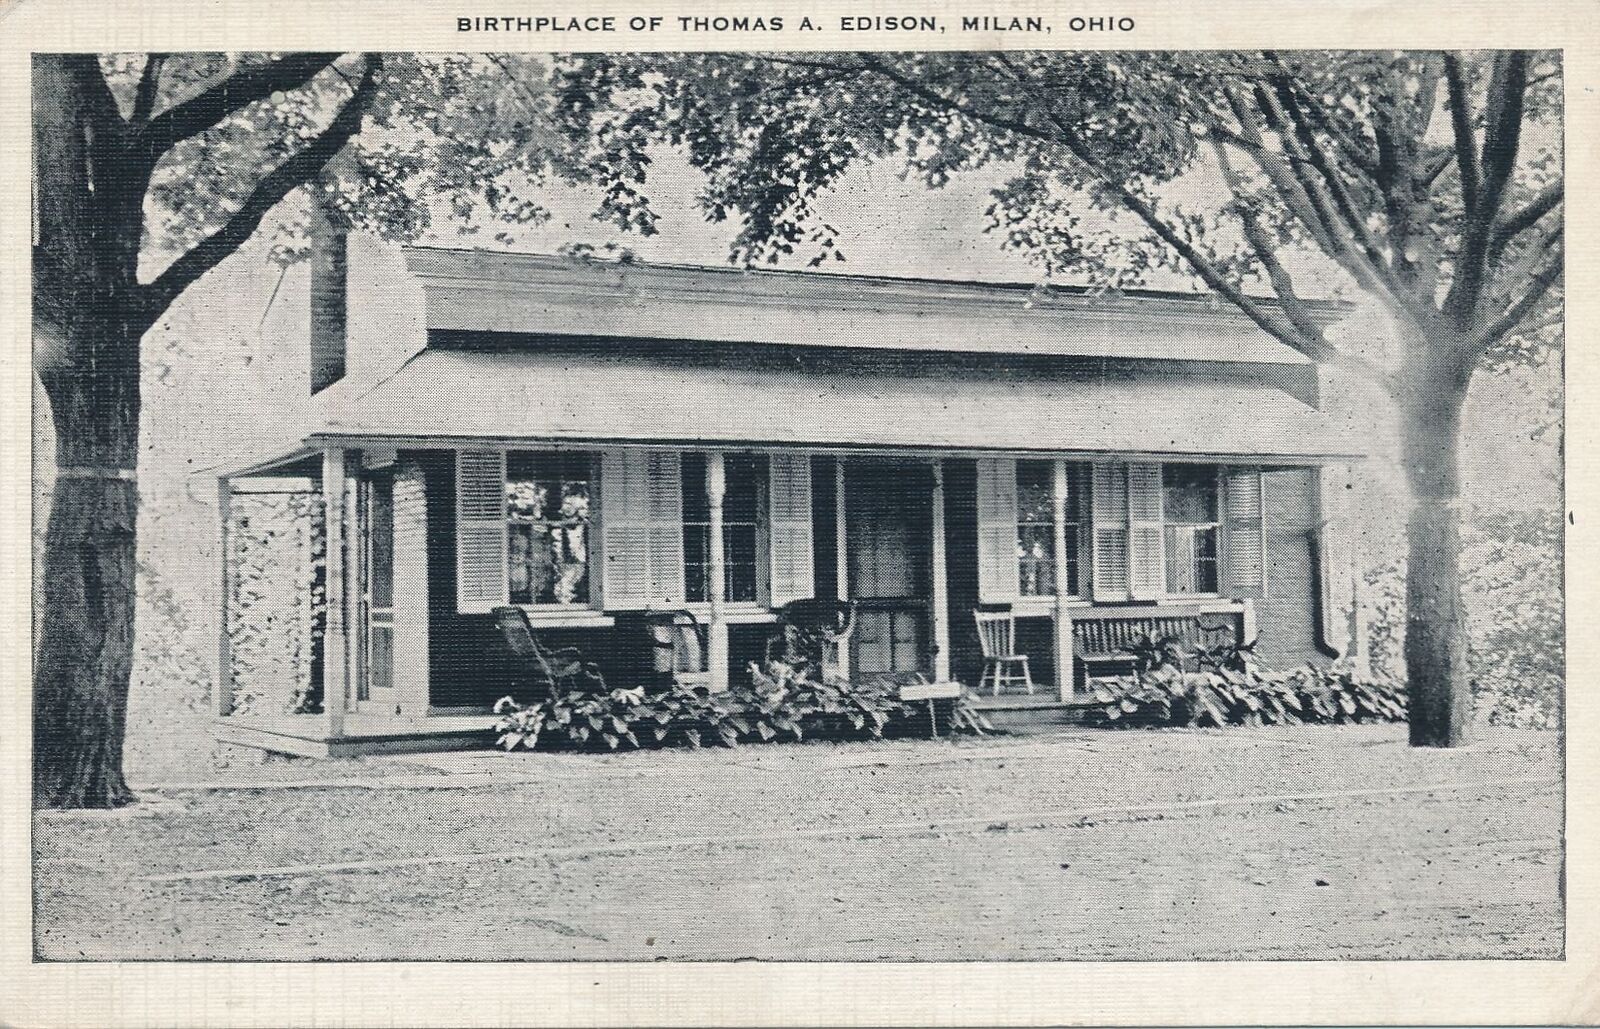 MILAN OH - Thomas A. Edison Birthplace Postcard - 1943